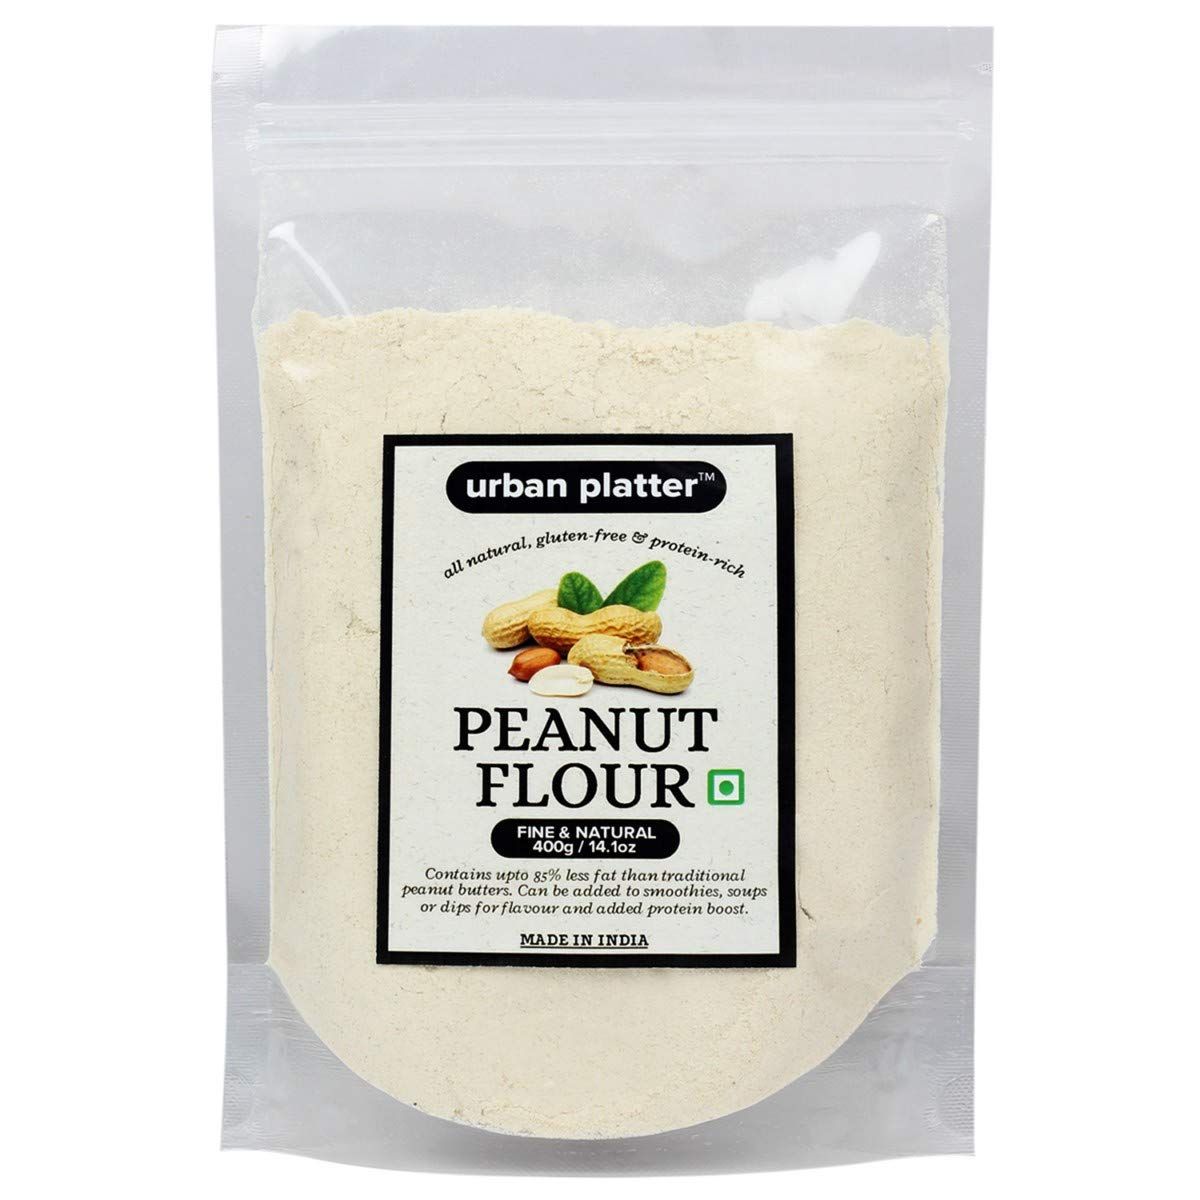 Urban Platter Peanut Flour Image